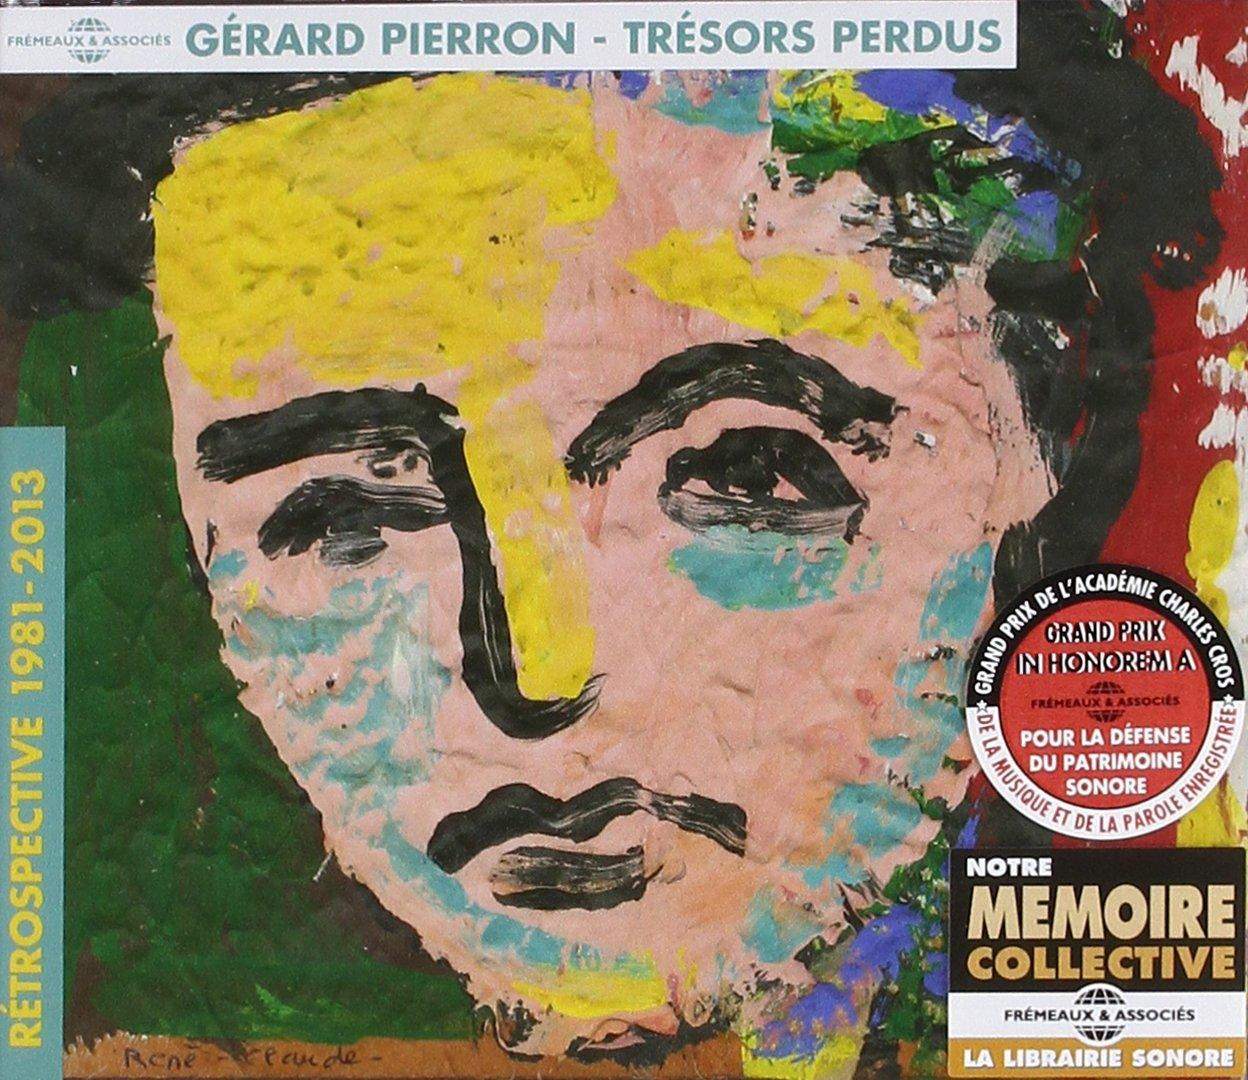 Gerard Pierron Perdus-Rétrospective - Trésors 1981-2013 (CD) 